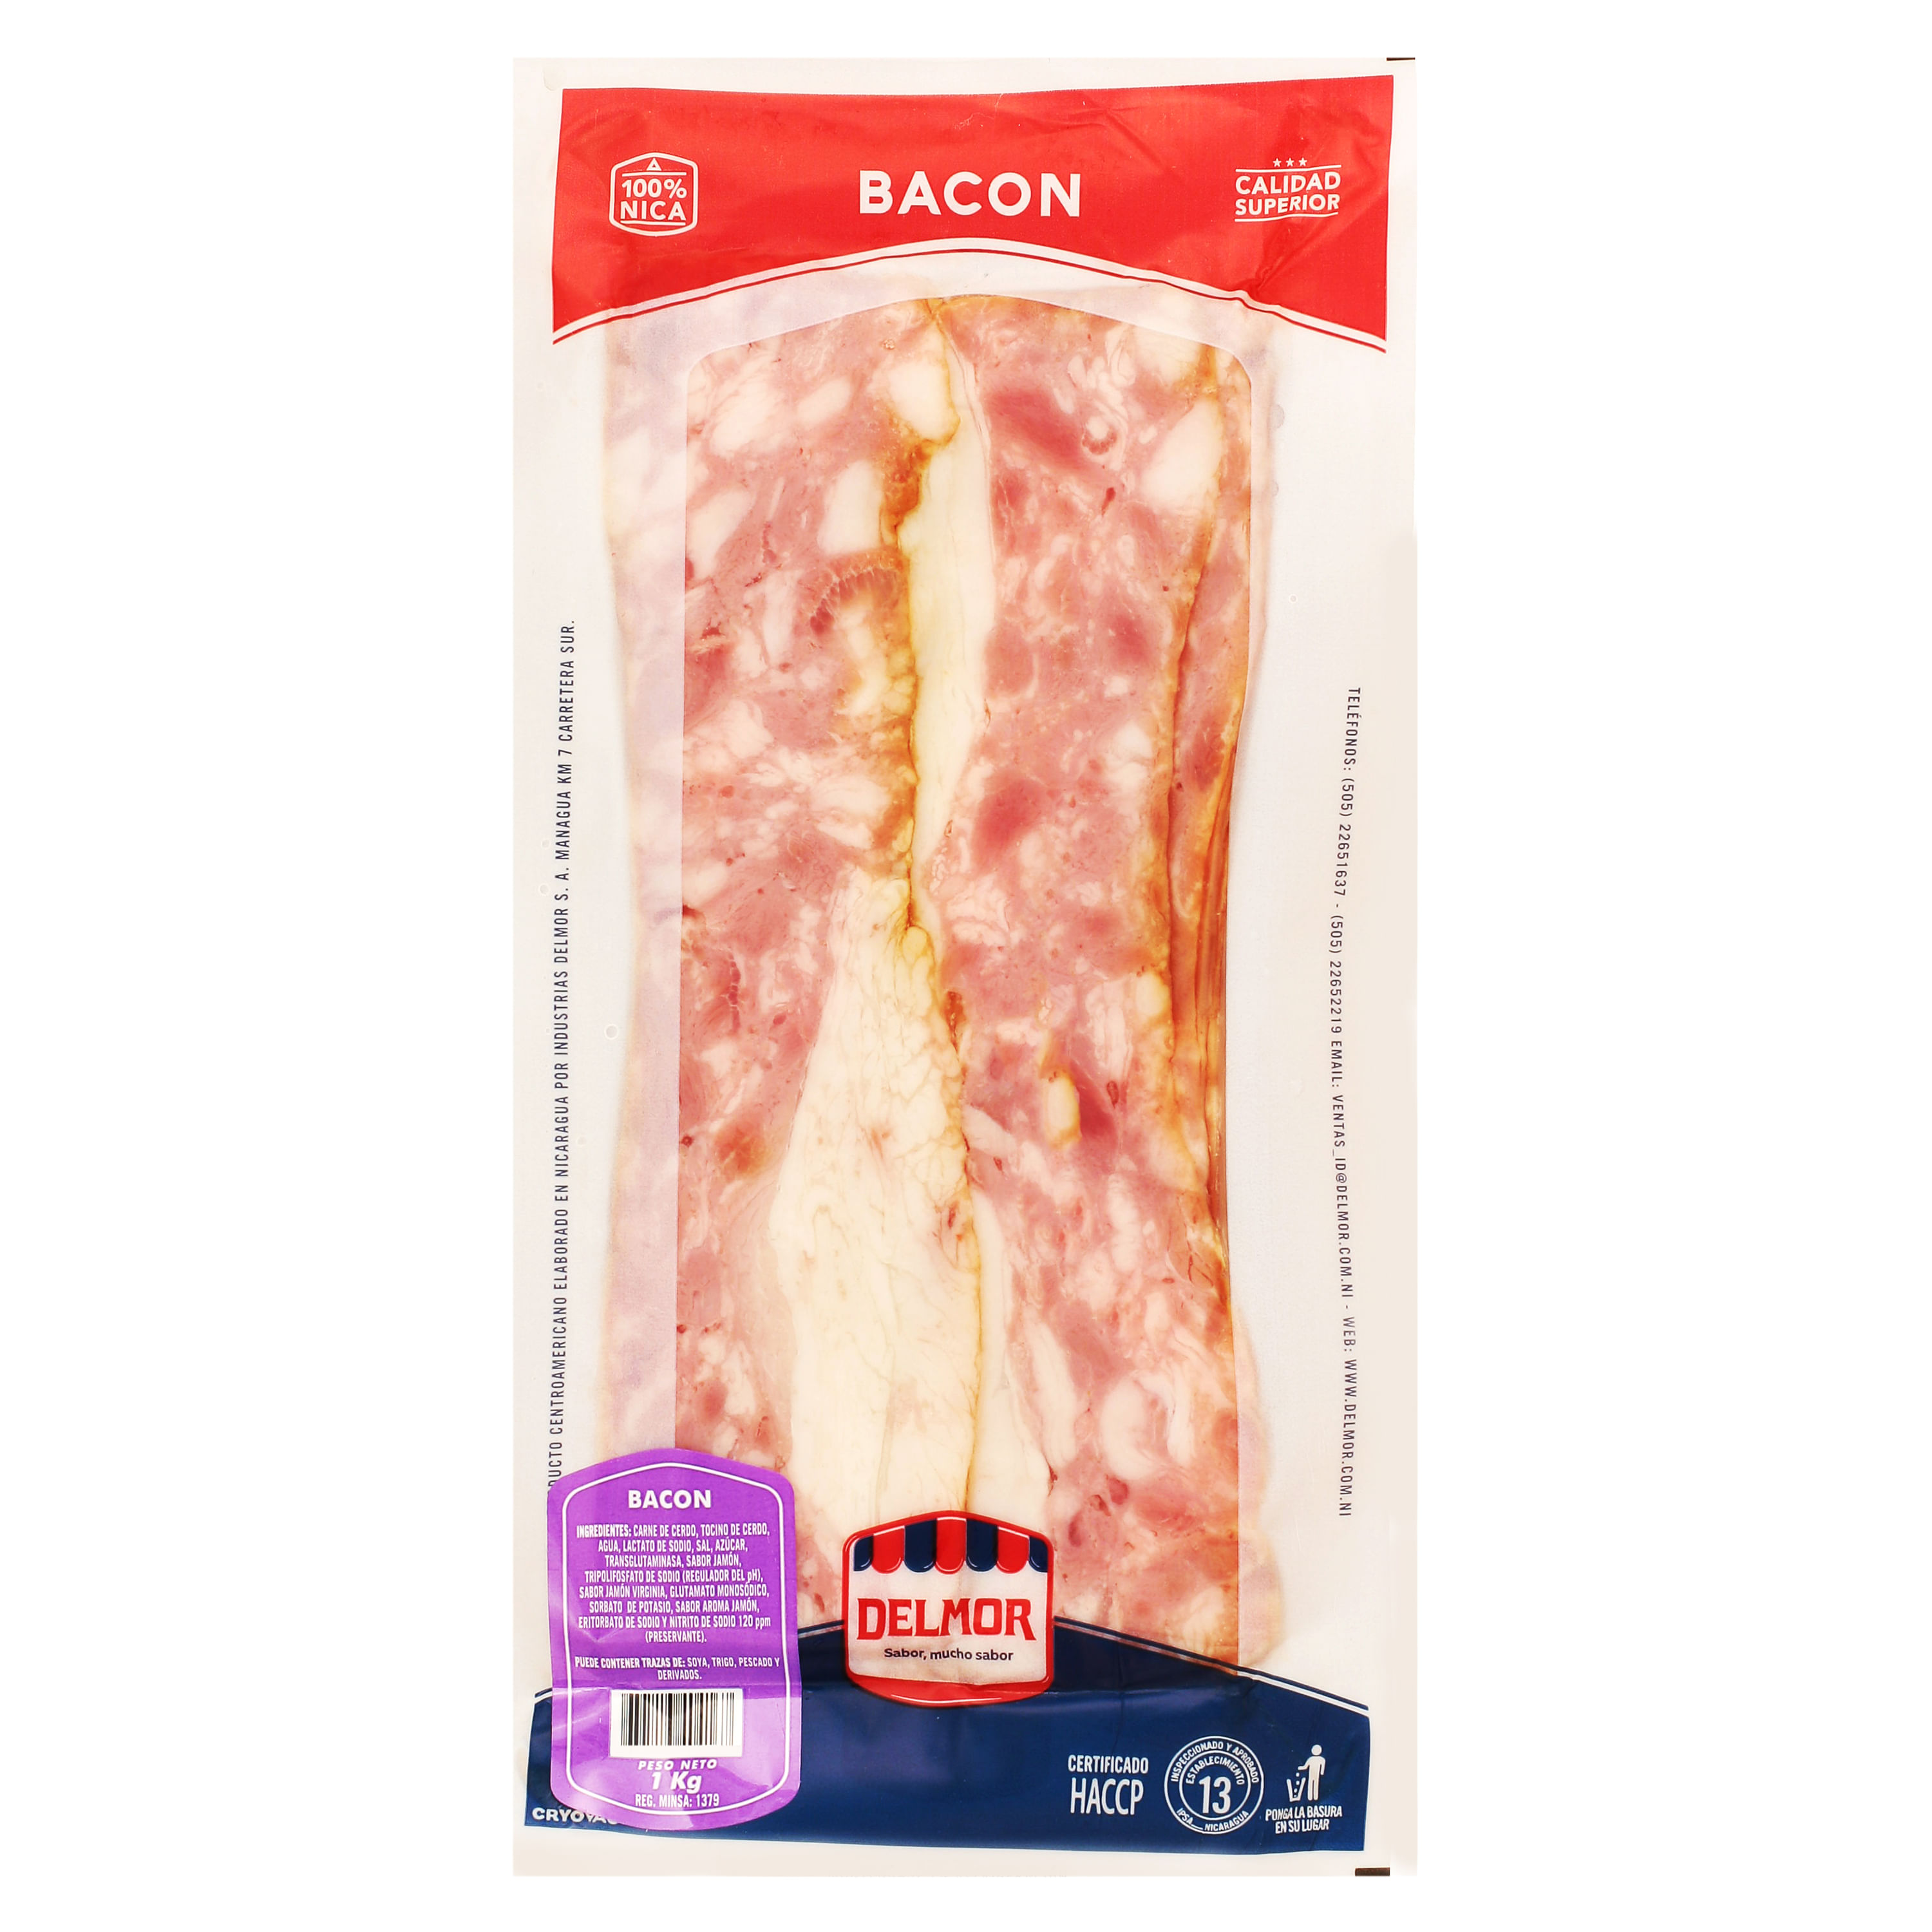 Bacon - Delmor